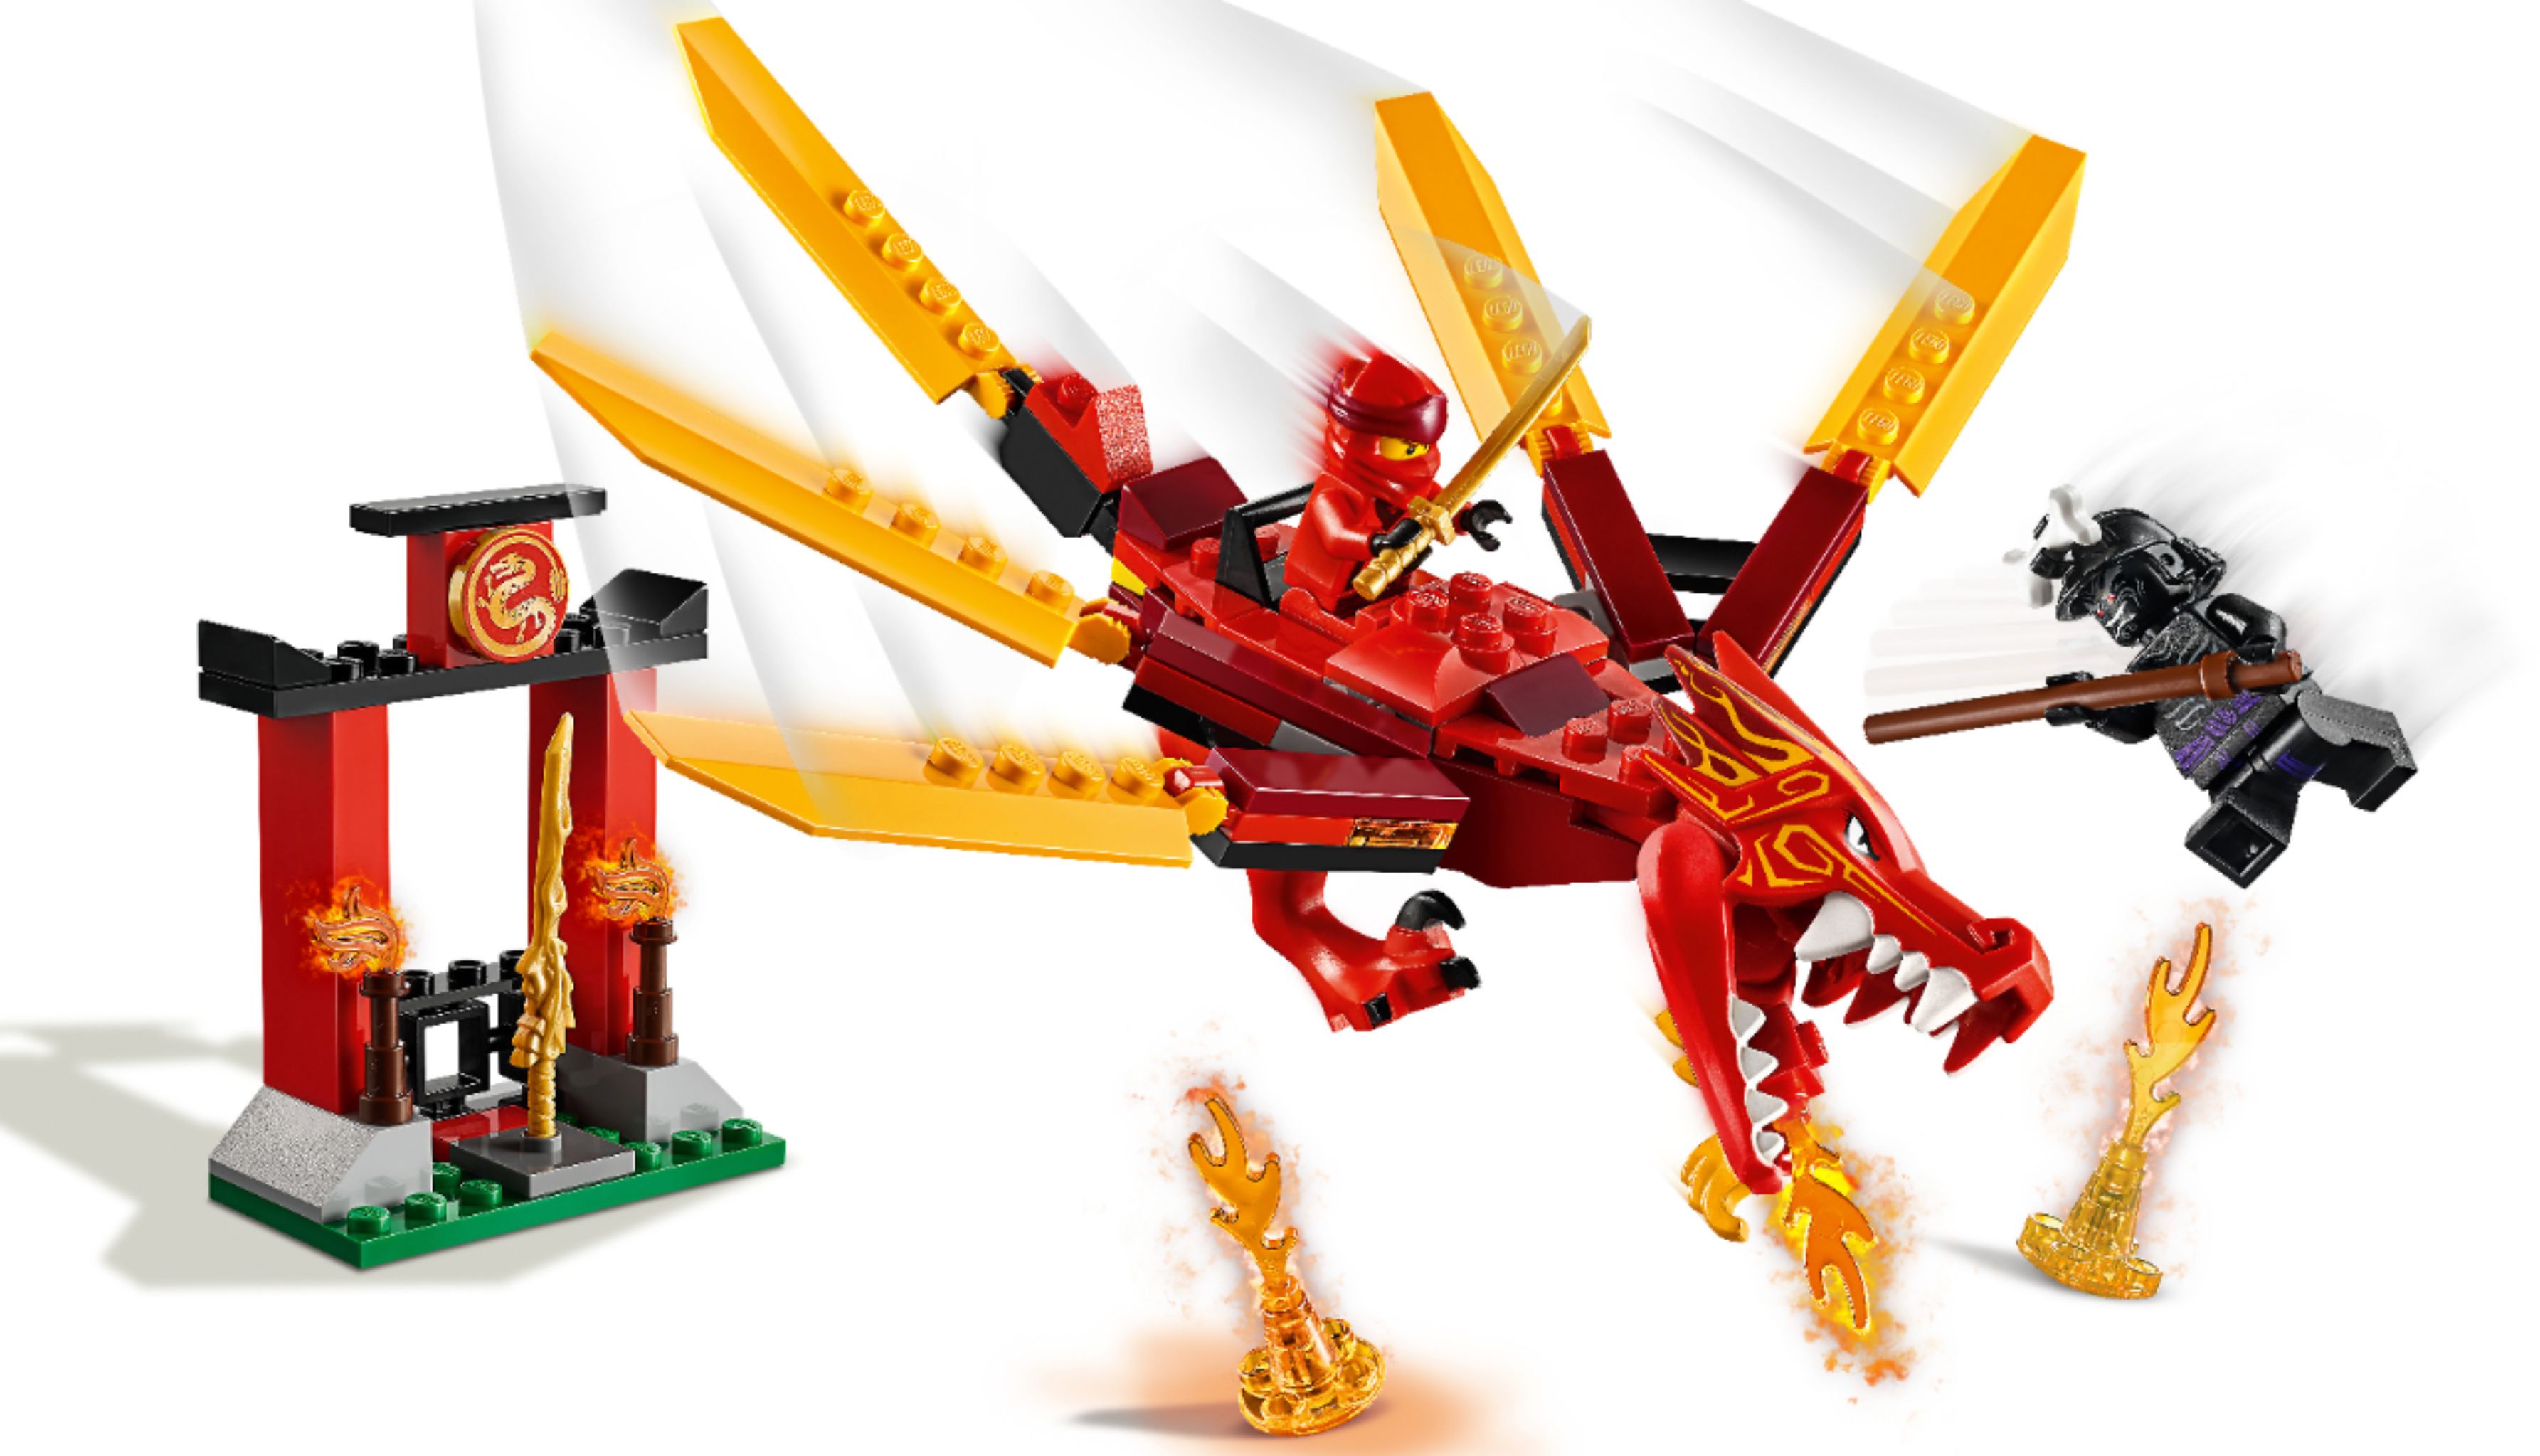 Nedrustning skære ned møl Best Buy: LEGO Ninjago Kai's Fire Dragon 71701 6288944